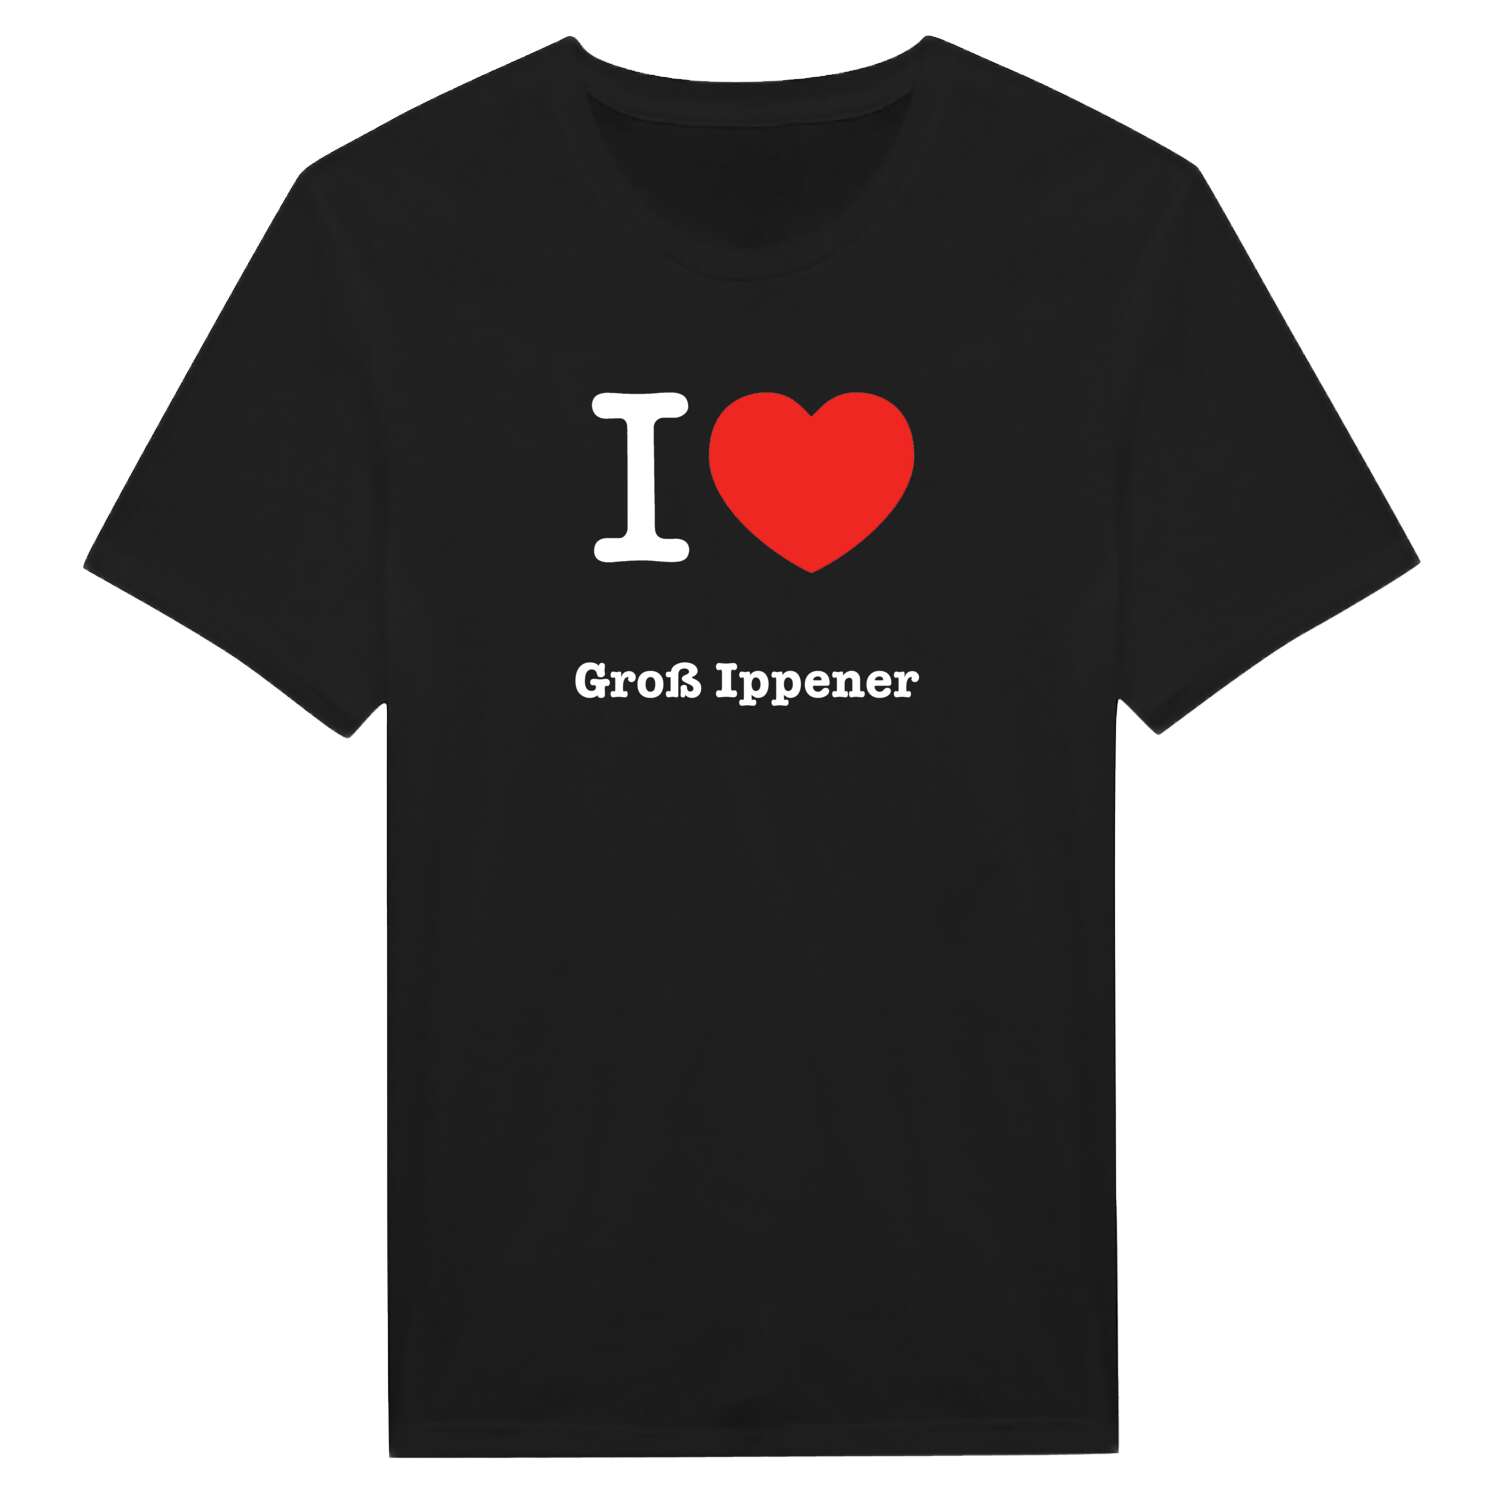 Groß Ippener T-Shirt »I love«